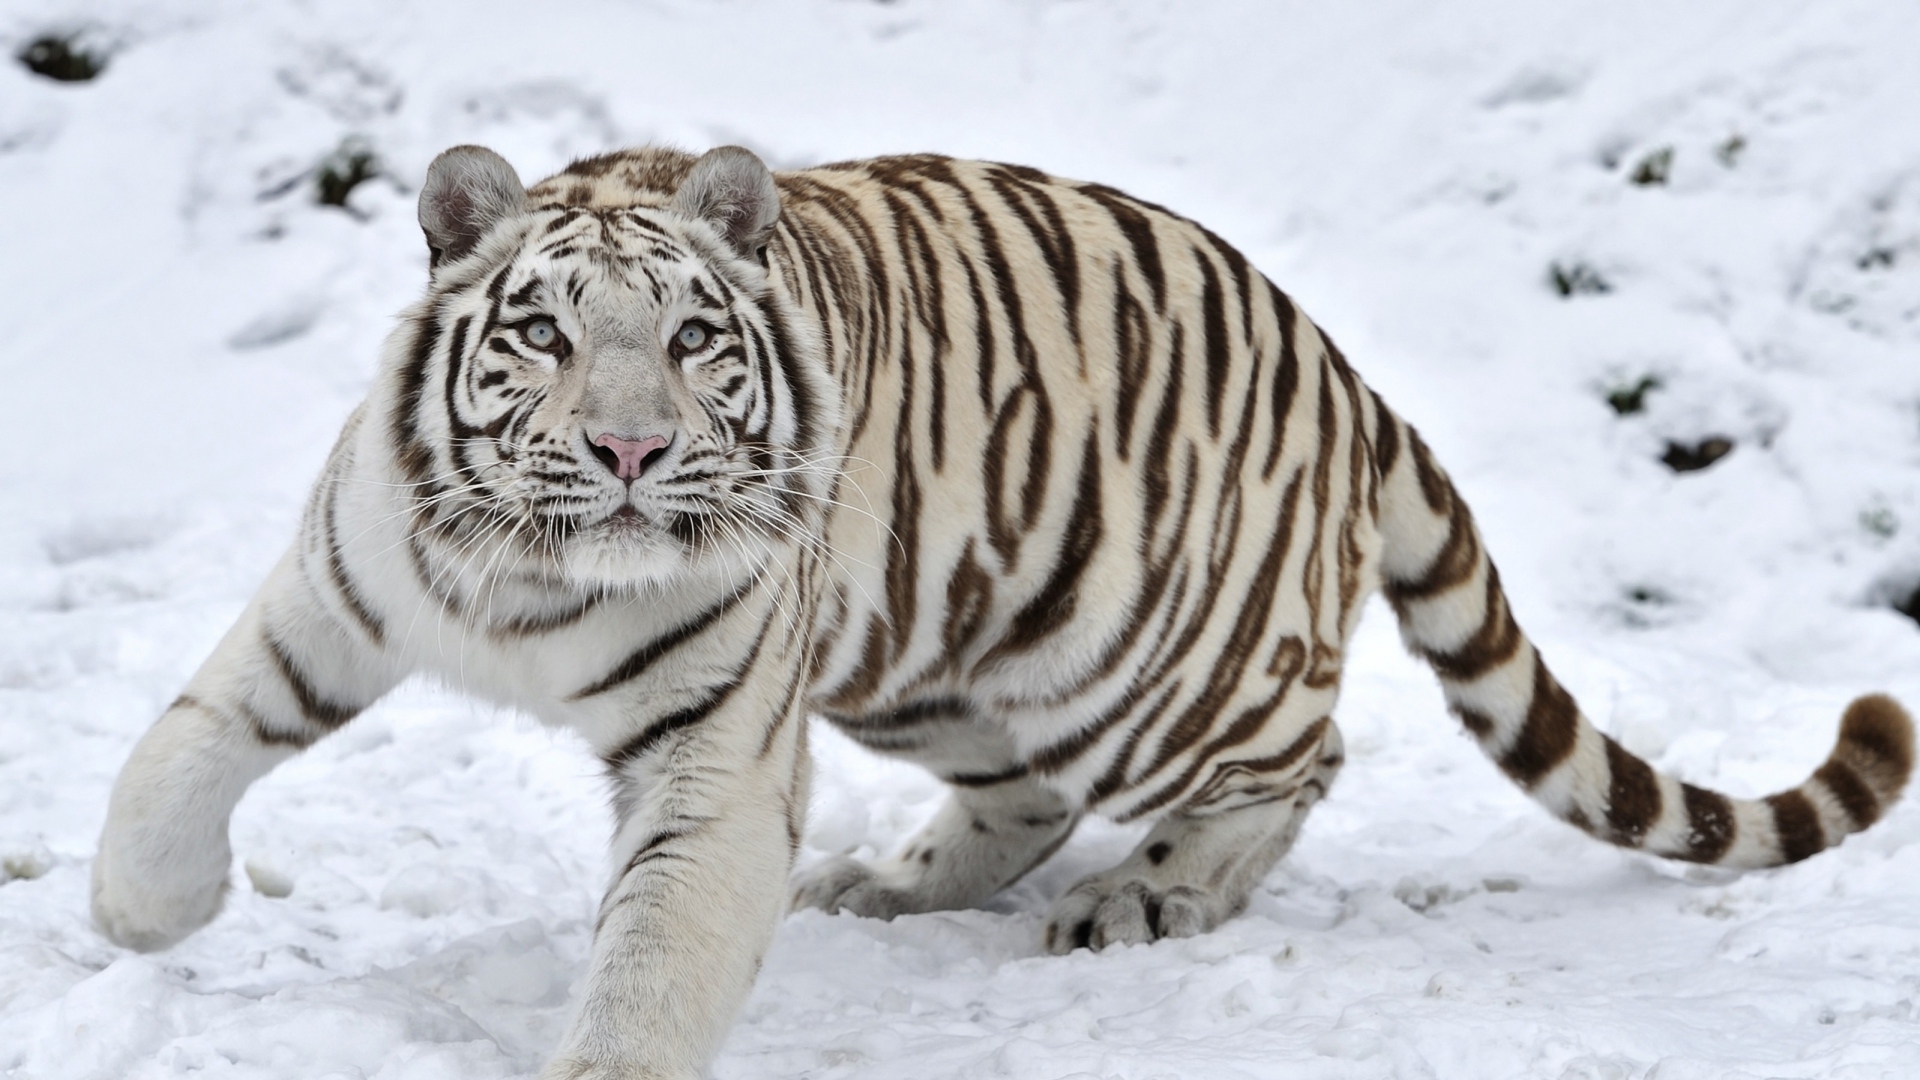 Wallpaper Tiger Albino Snow Winter Full HD 1080p